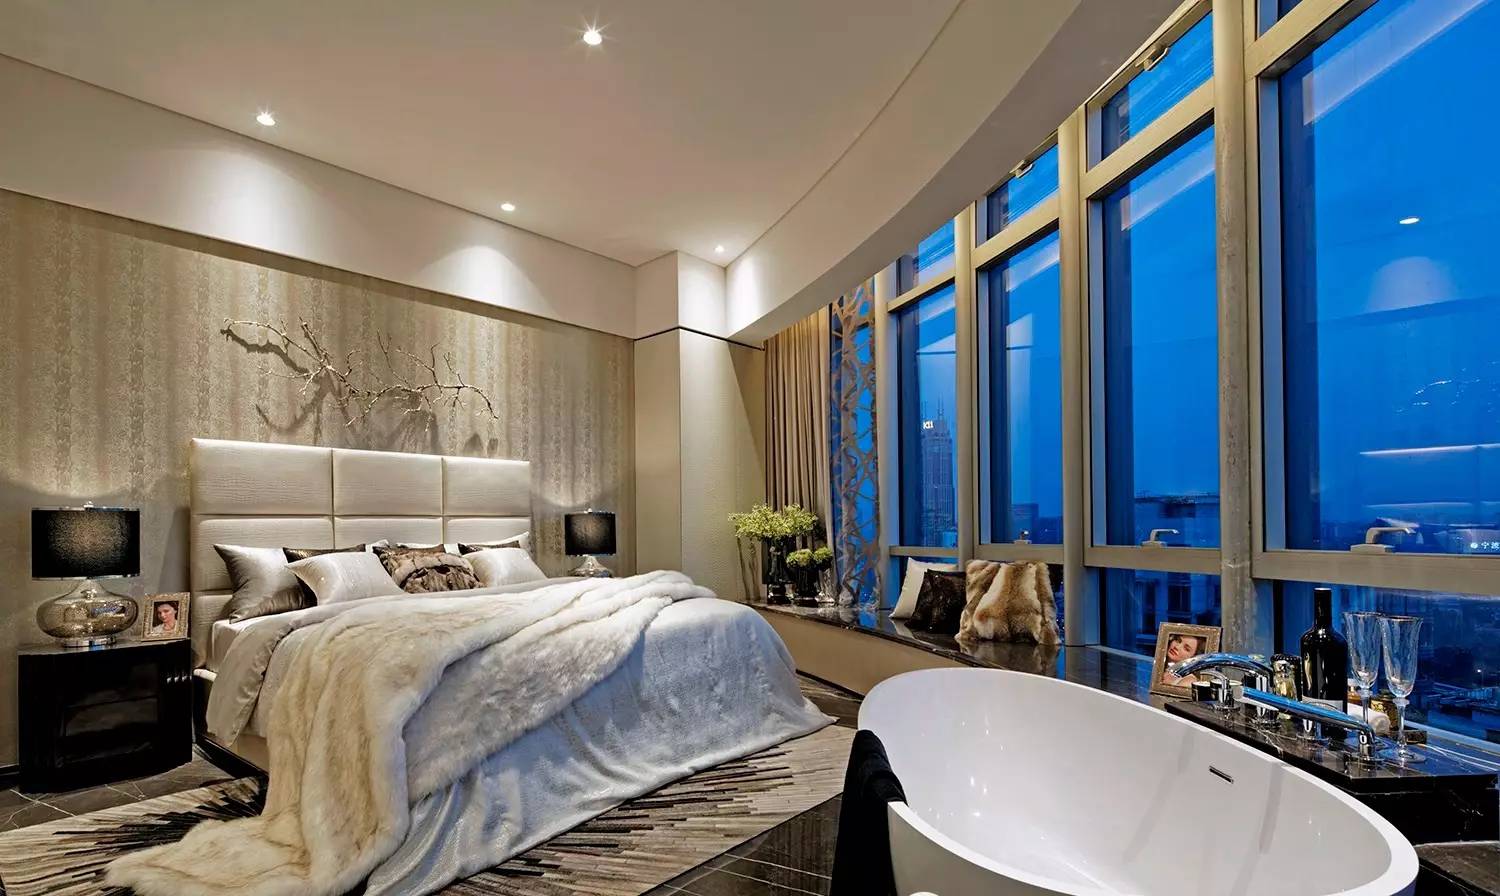 主卧背景墙层次感强，软包床头清新舒适，搭配浴缸设计，凸显主人对品质生活的追求。